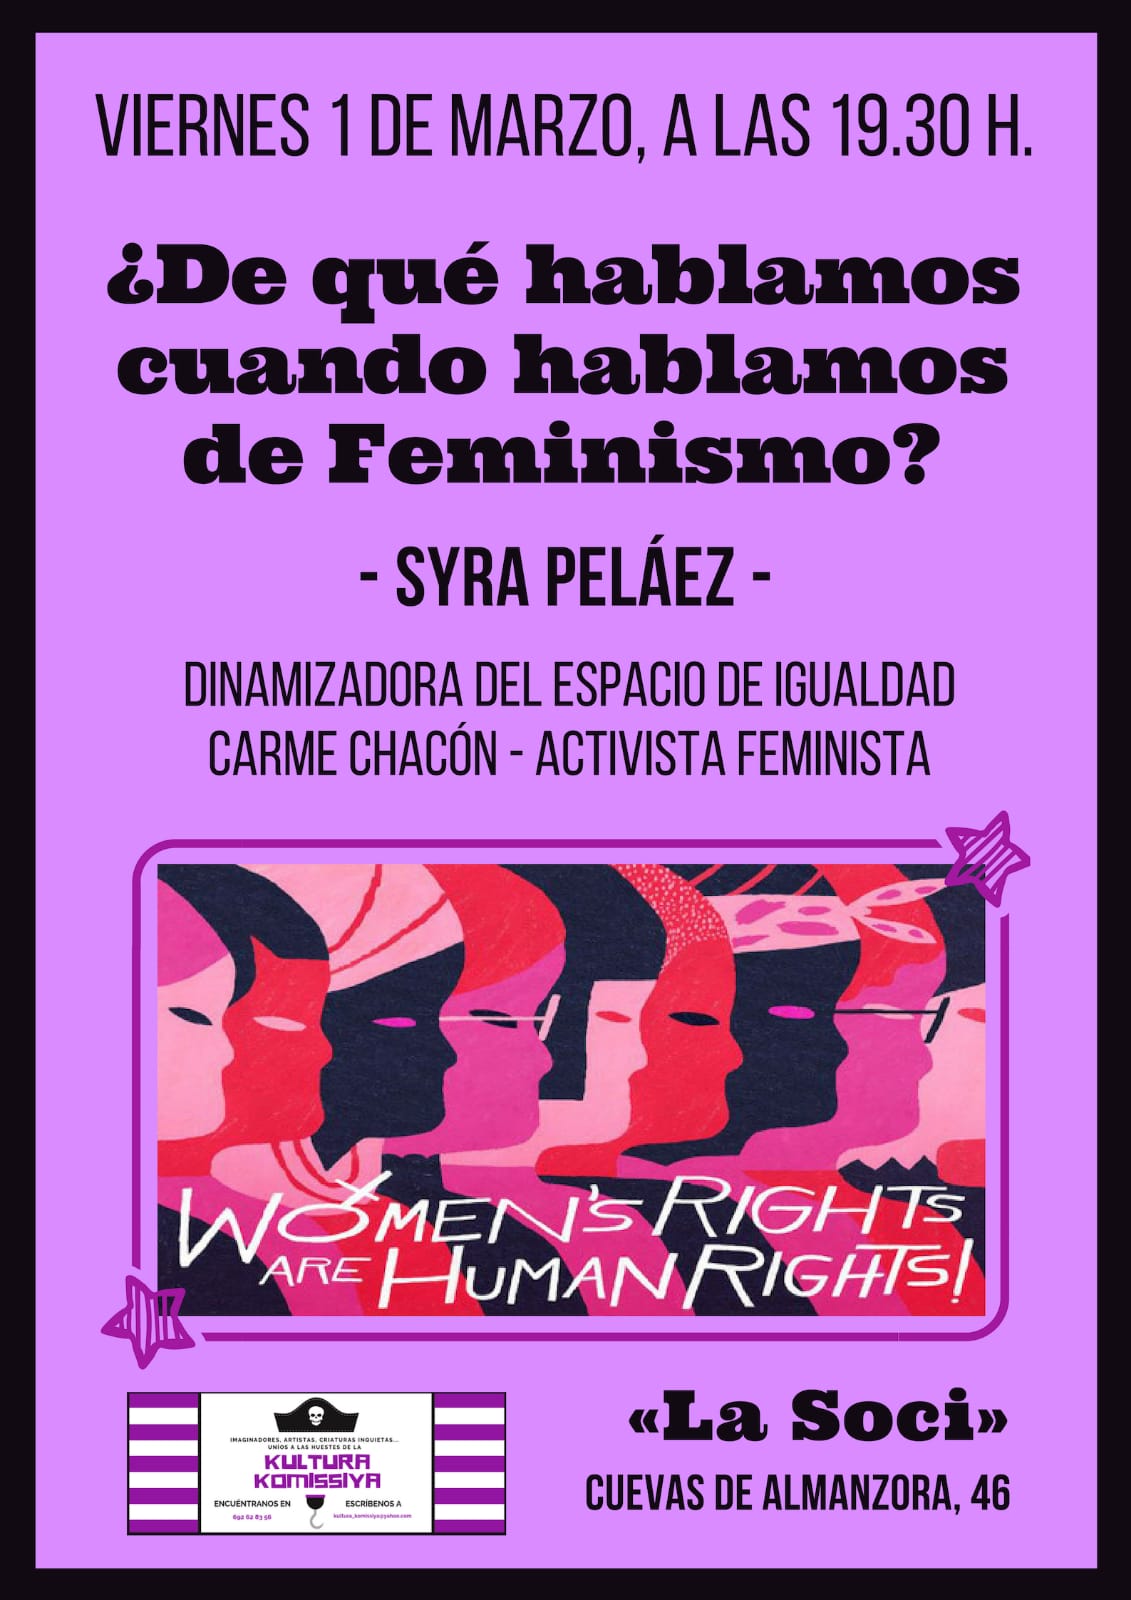 Charla-debate en La Soci de Manoteras: Feminismos e igualdad